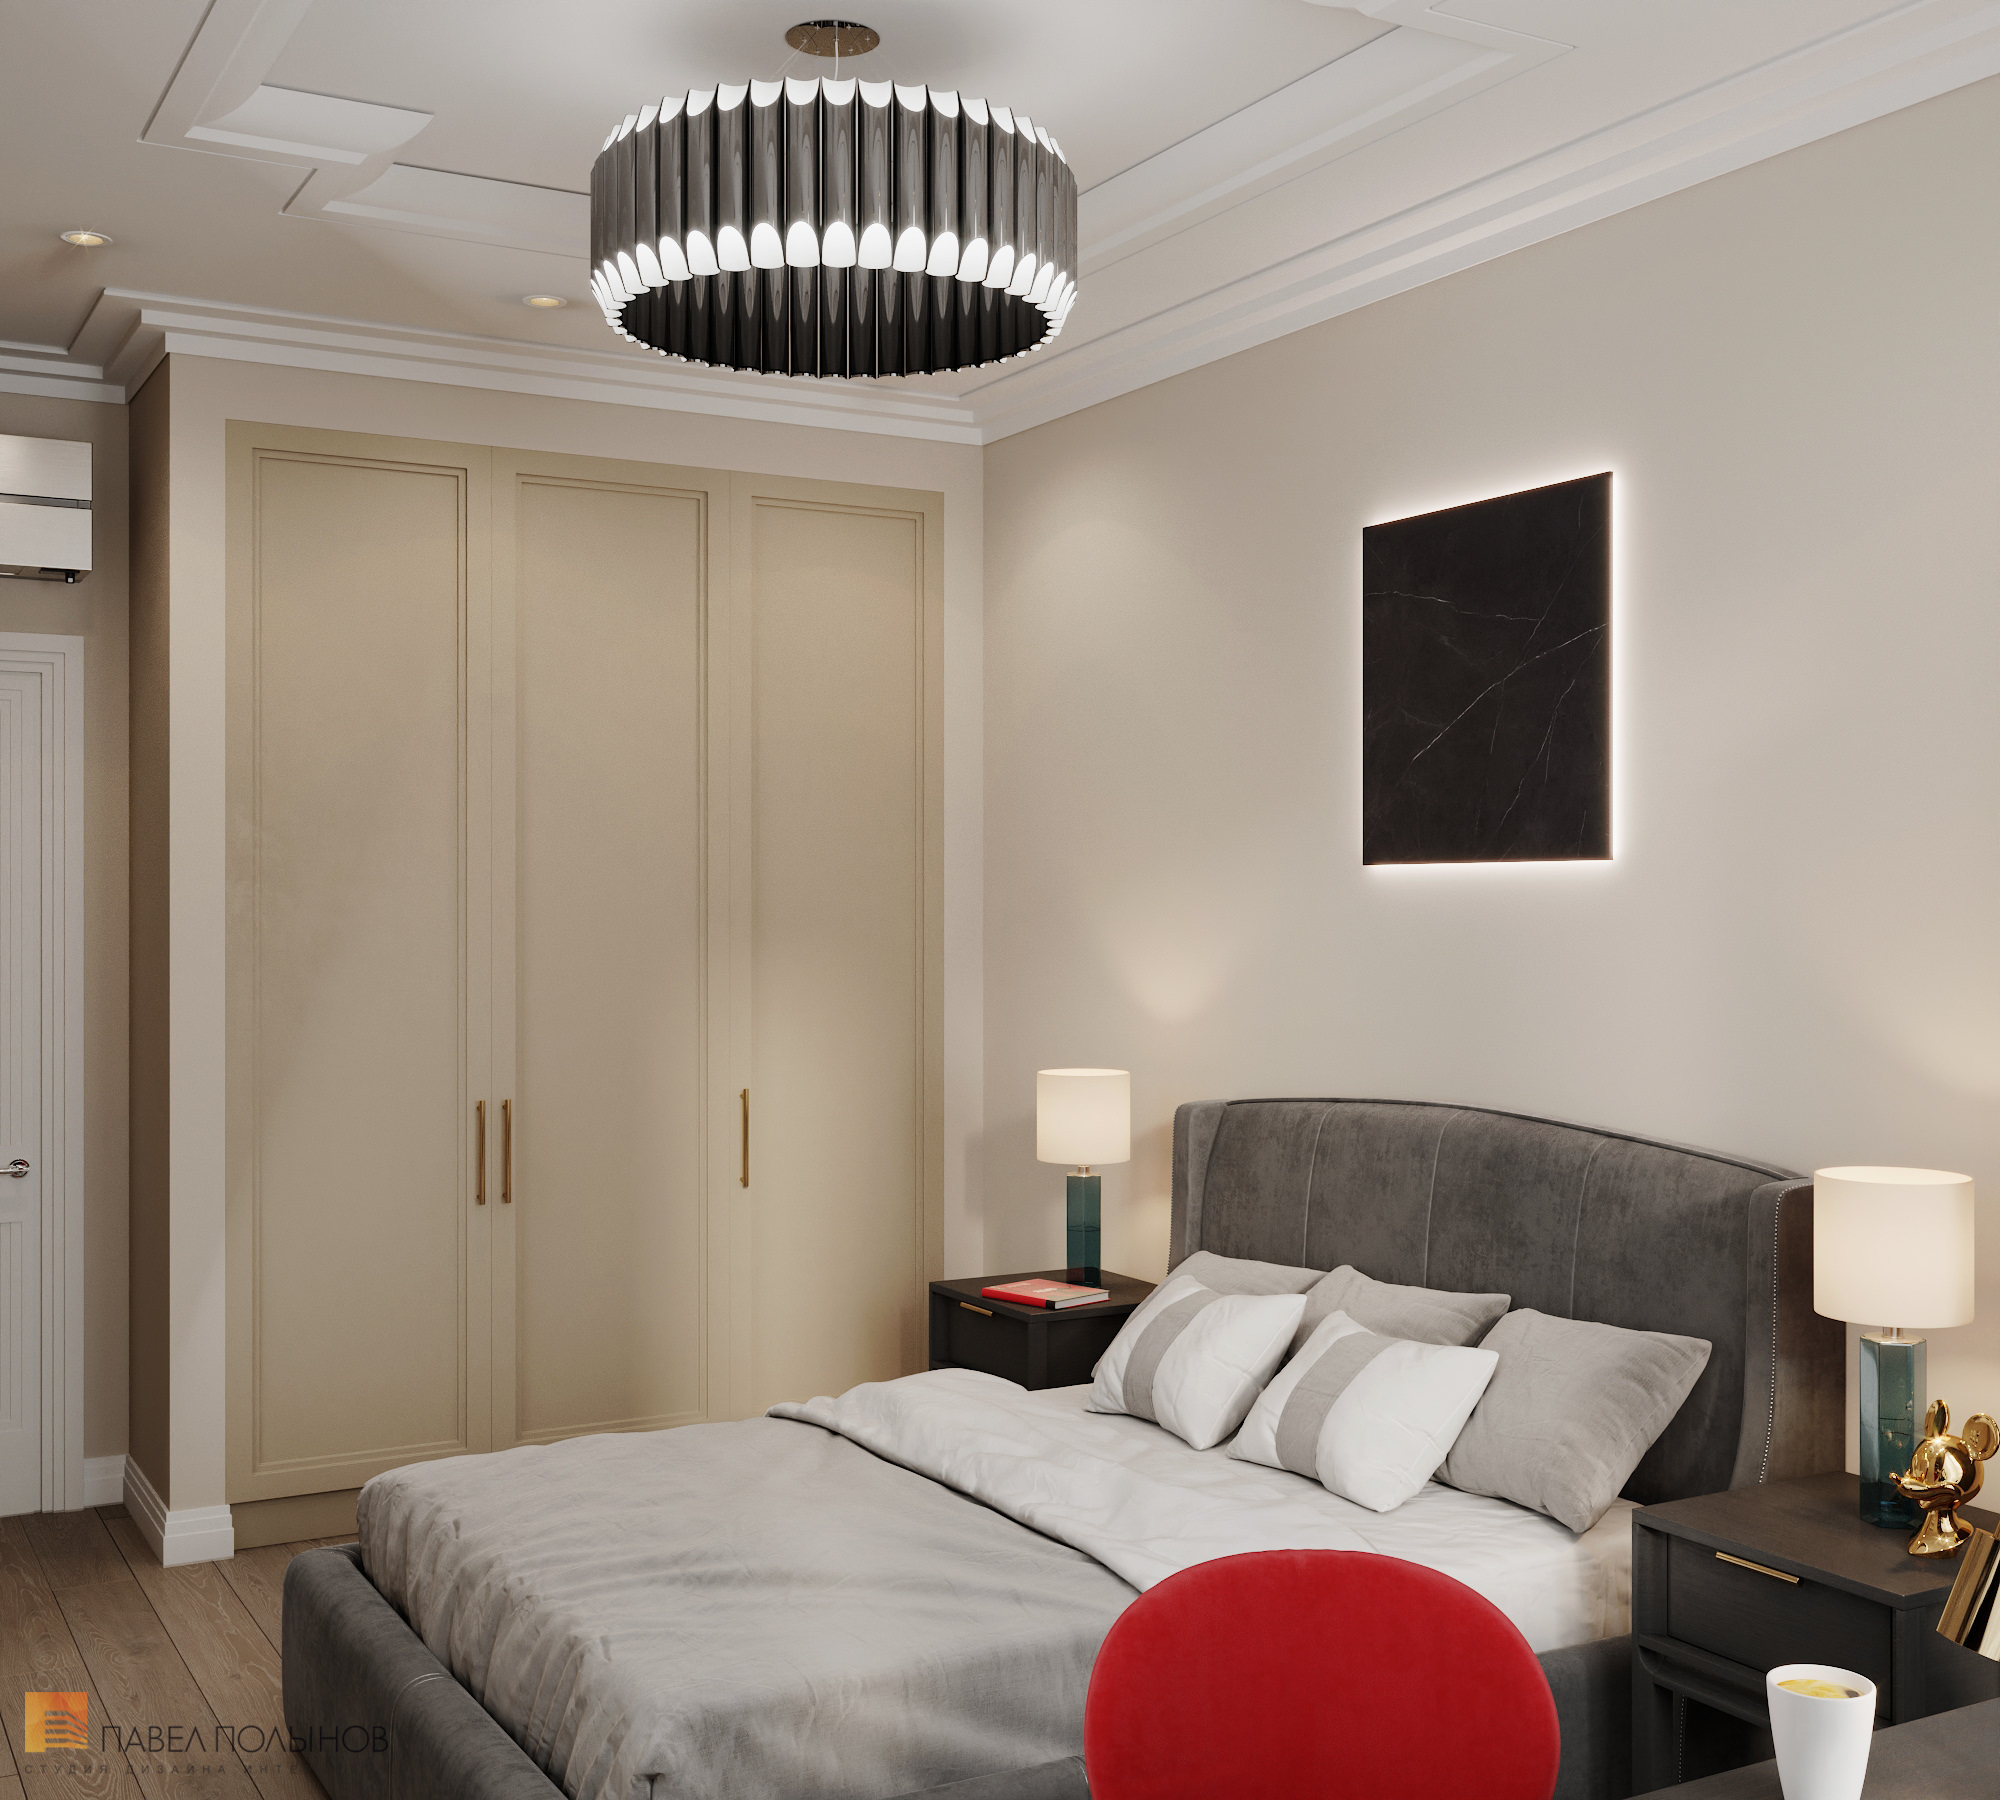 Фото дизайн интерьера комнаты для подростка из проекта «Квартира в современном стиле, ЖК «1147», 97 кв.м.»